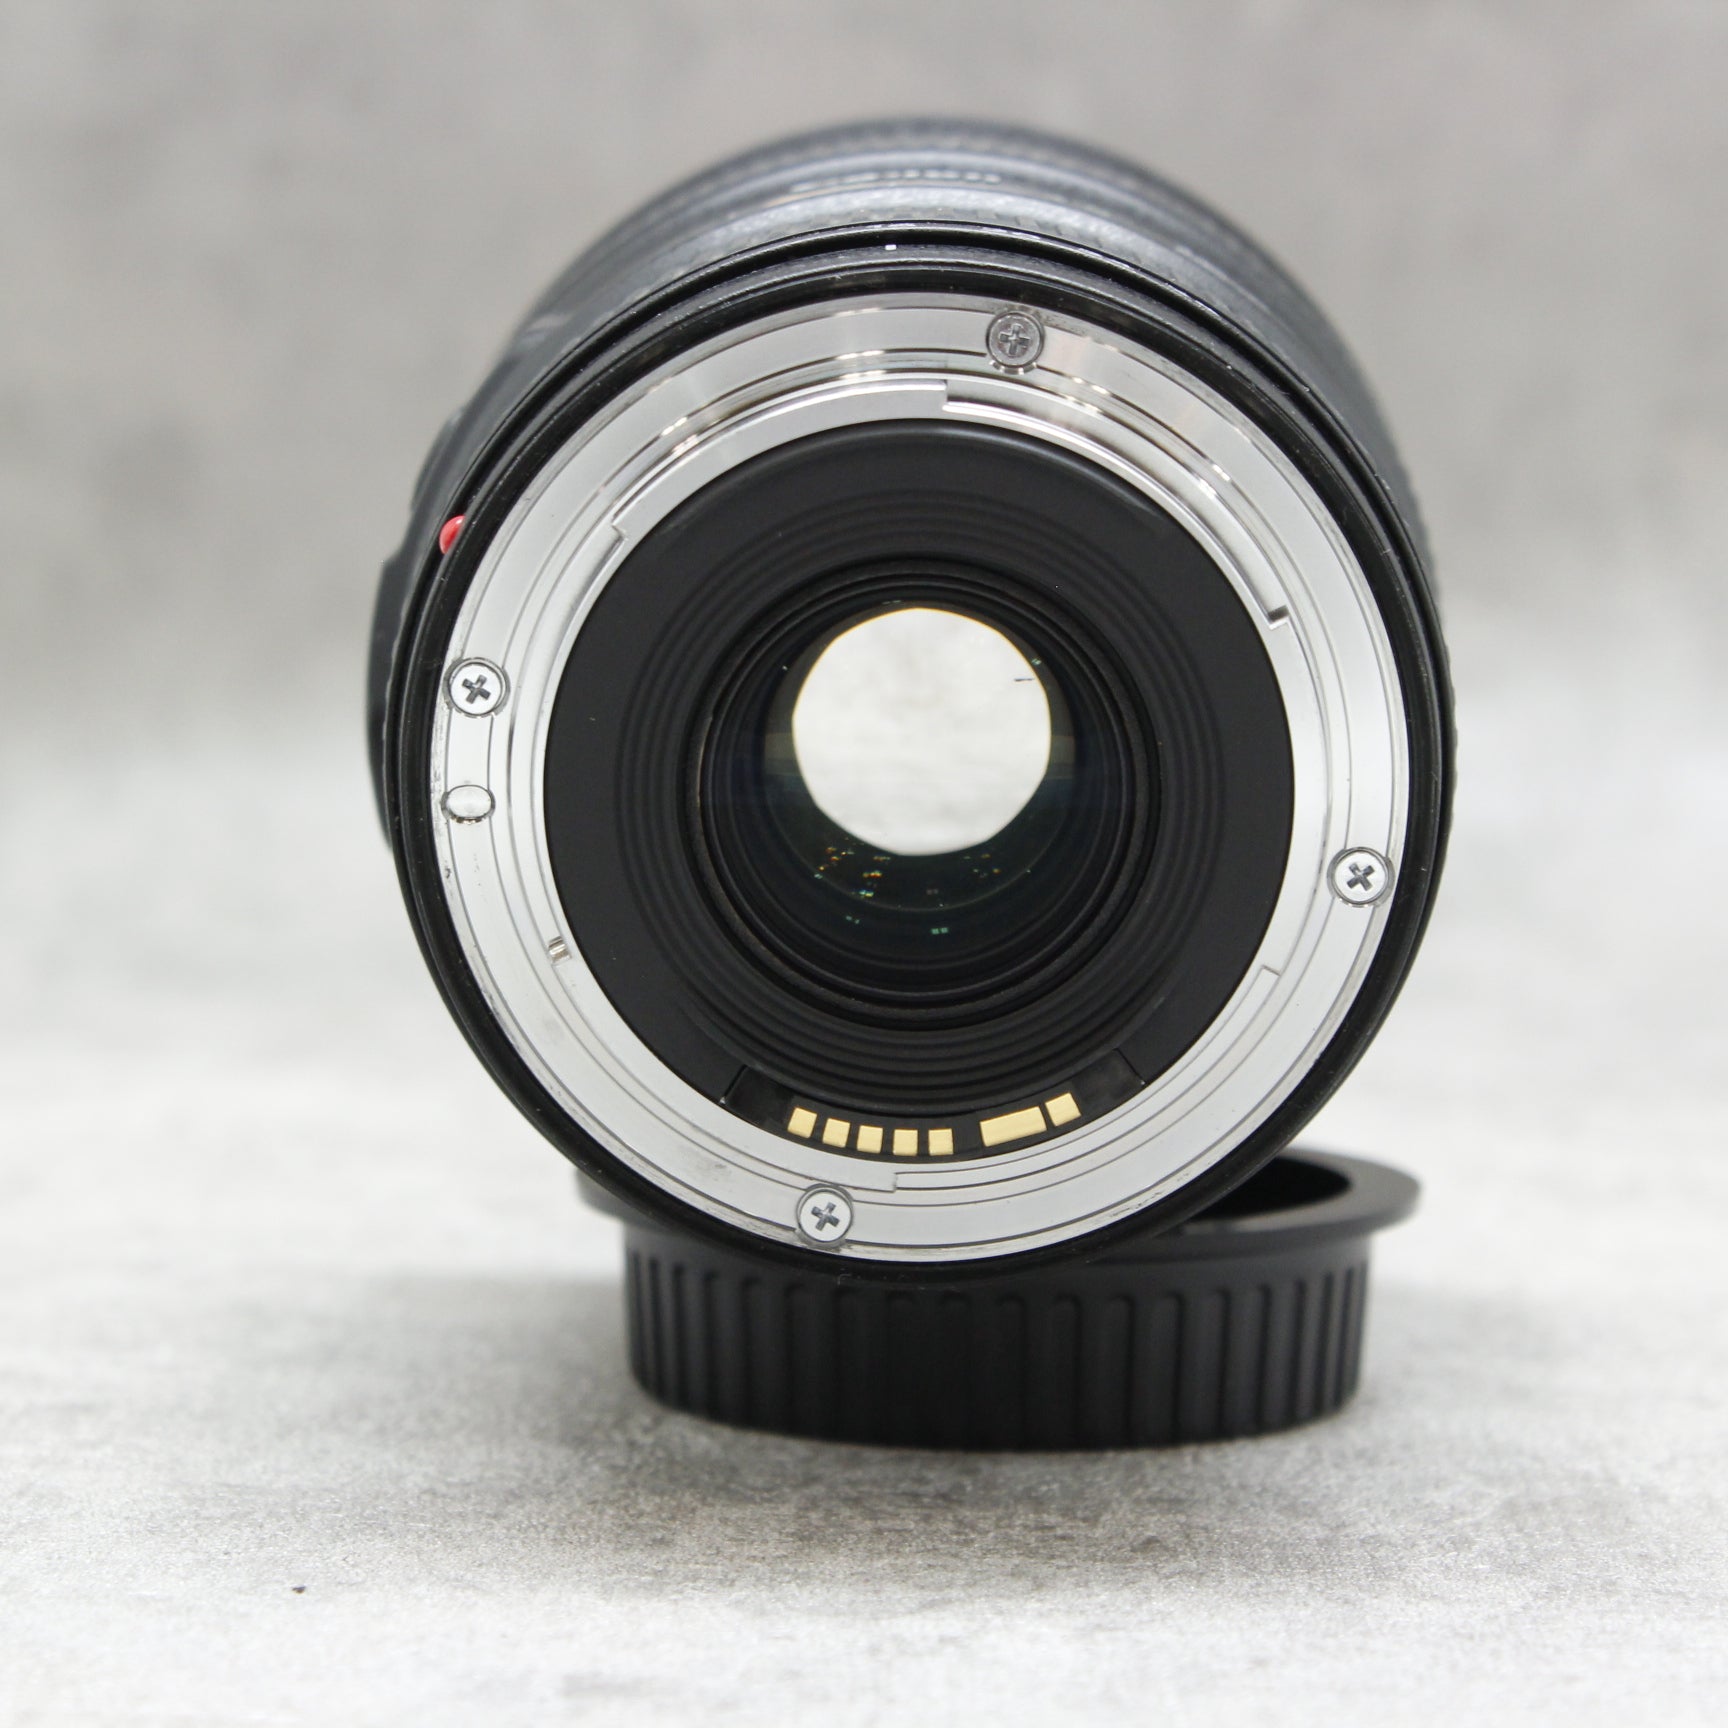 中古品 Canon EF 16-35mm F4 L IS USM ※11月6日(日)のYouTubeでご紹介